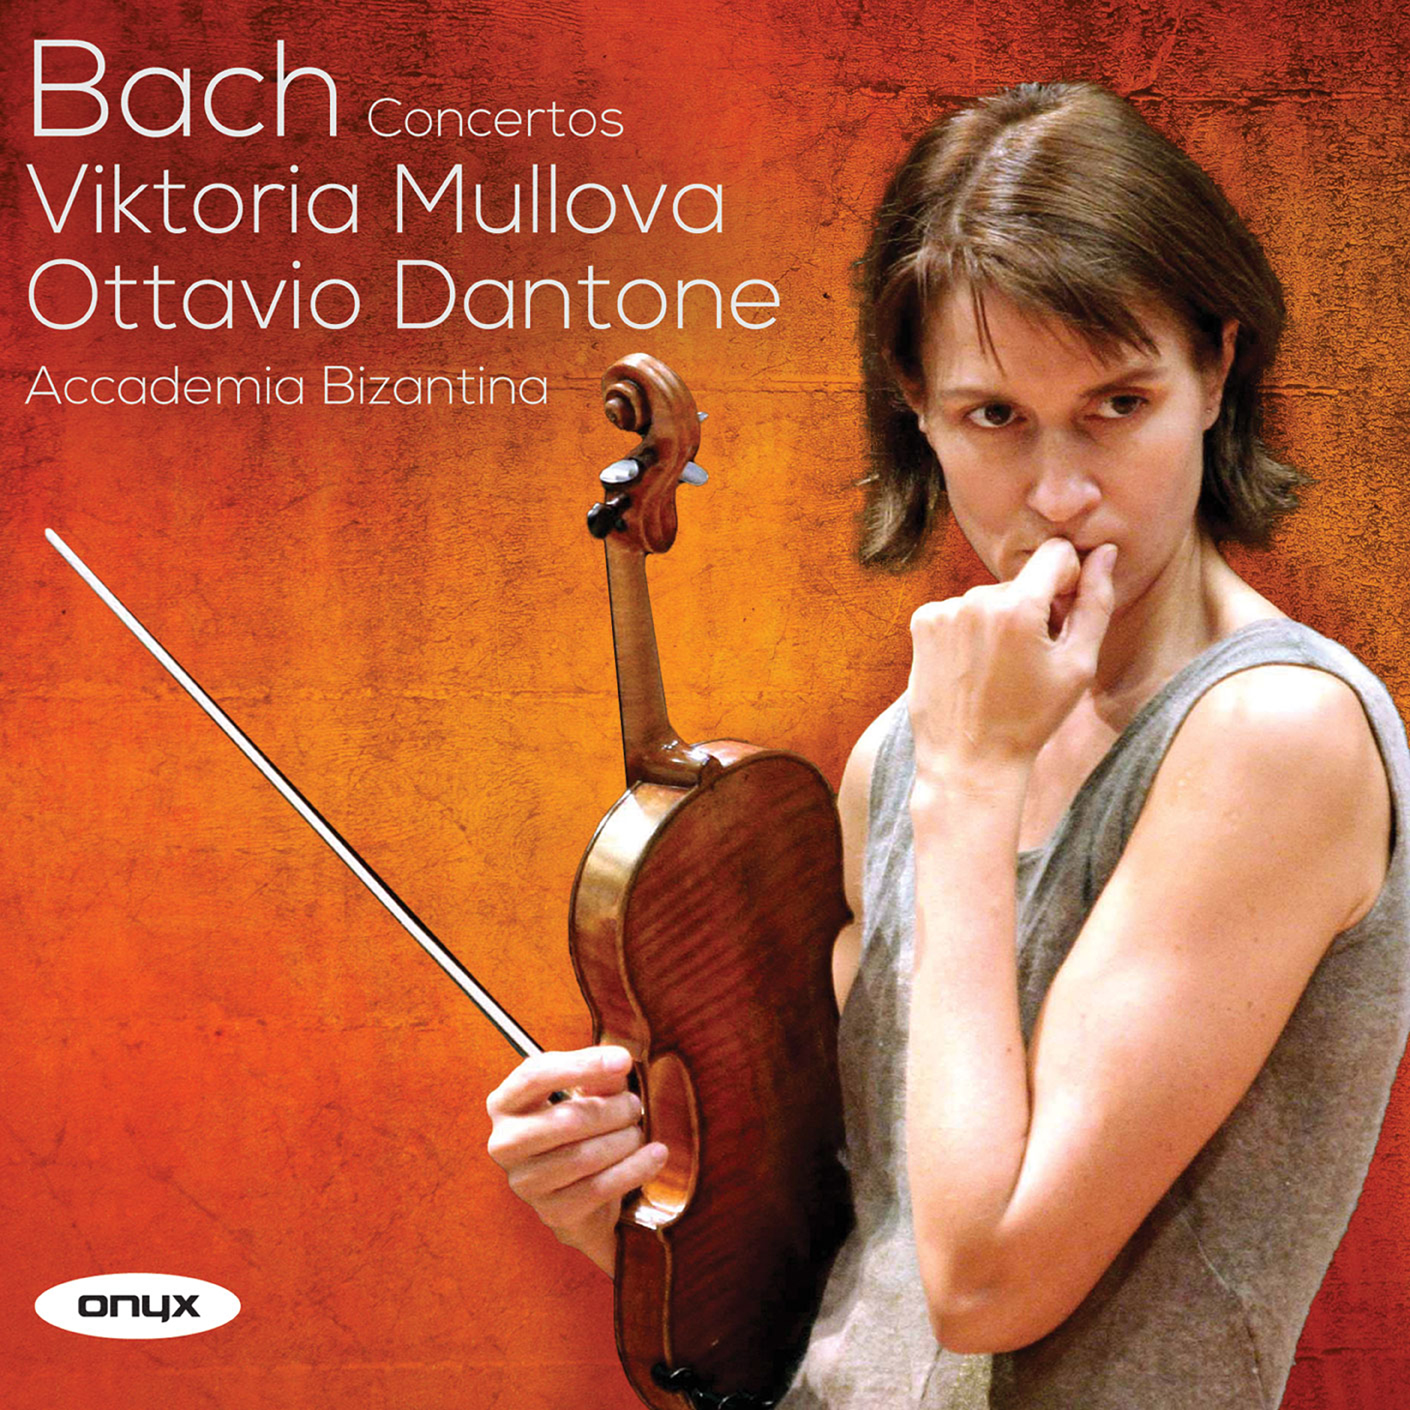 Bach: Violin Concertos in A Minor and E Major; Concertos BWV 1053 & BWV 1060